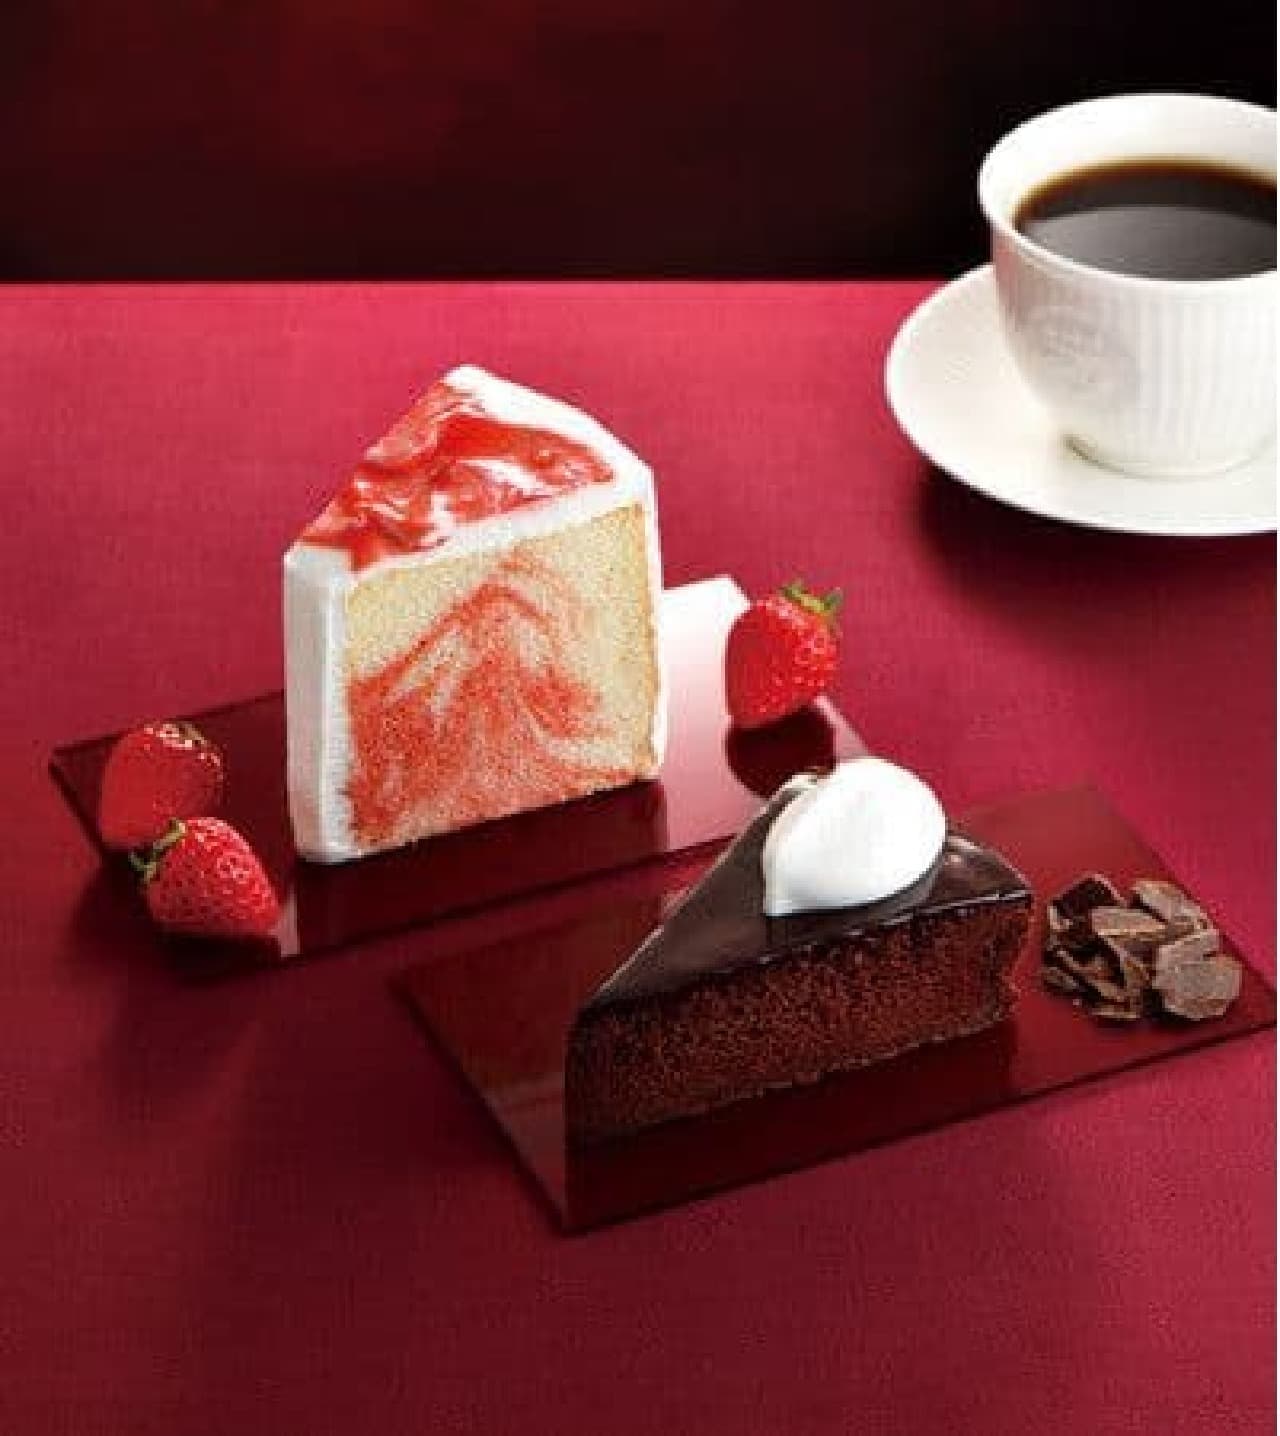 Cafe de Clie "Dark Gateau Chocolat-Cacao 72%-" "Strawberry Chiffon Cake"